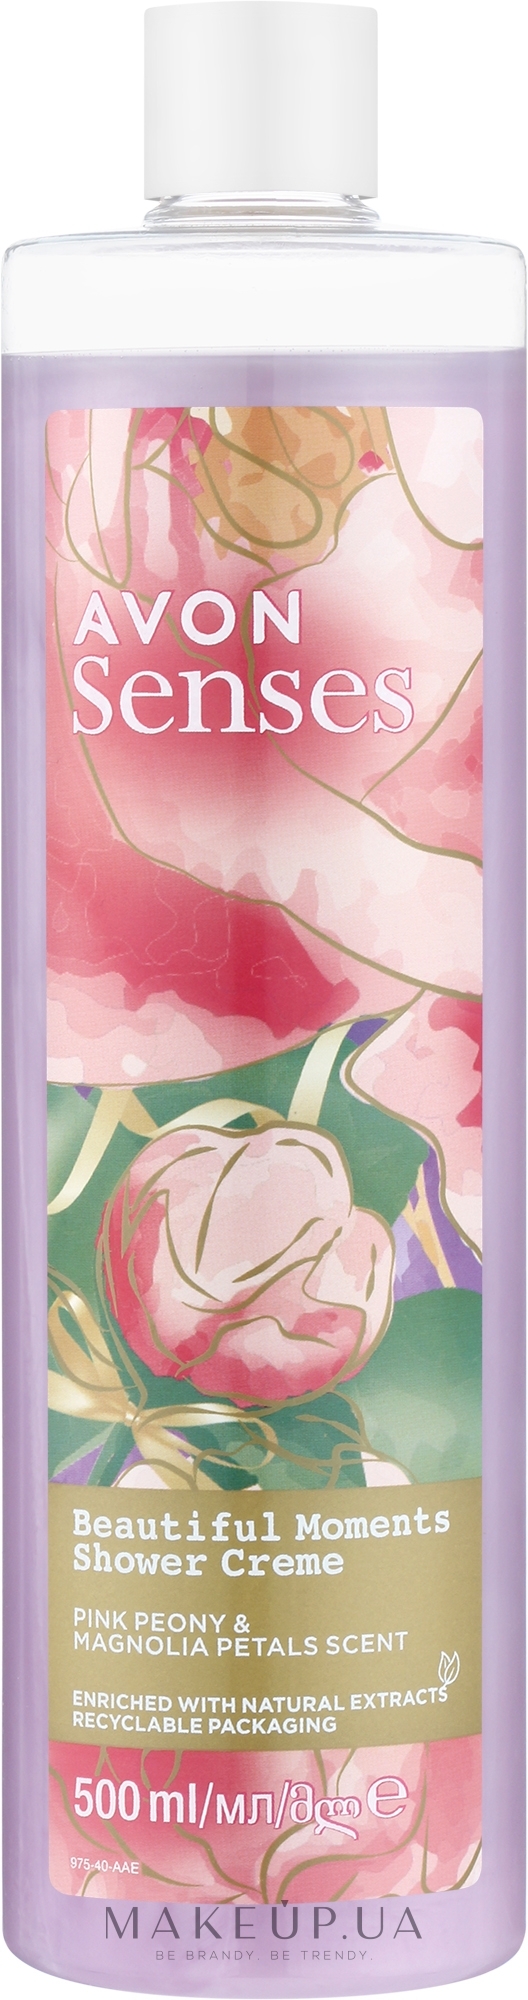 Кремовый гель для душа "Великолепные моменты" - Avon Senses Beautiful Momonts Shower Creme — фото 500ml